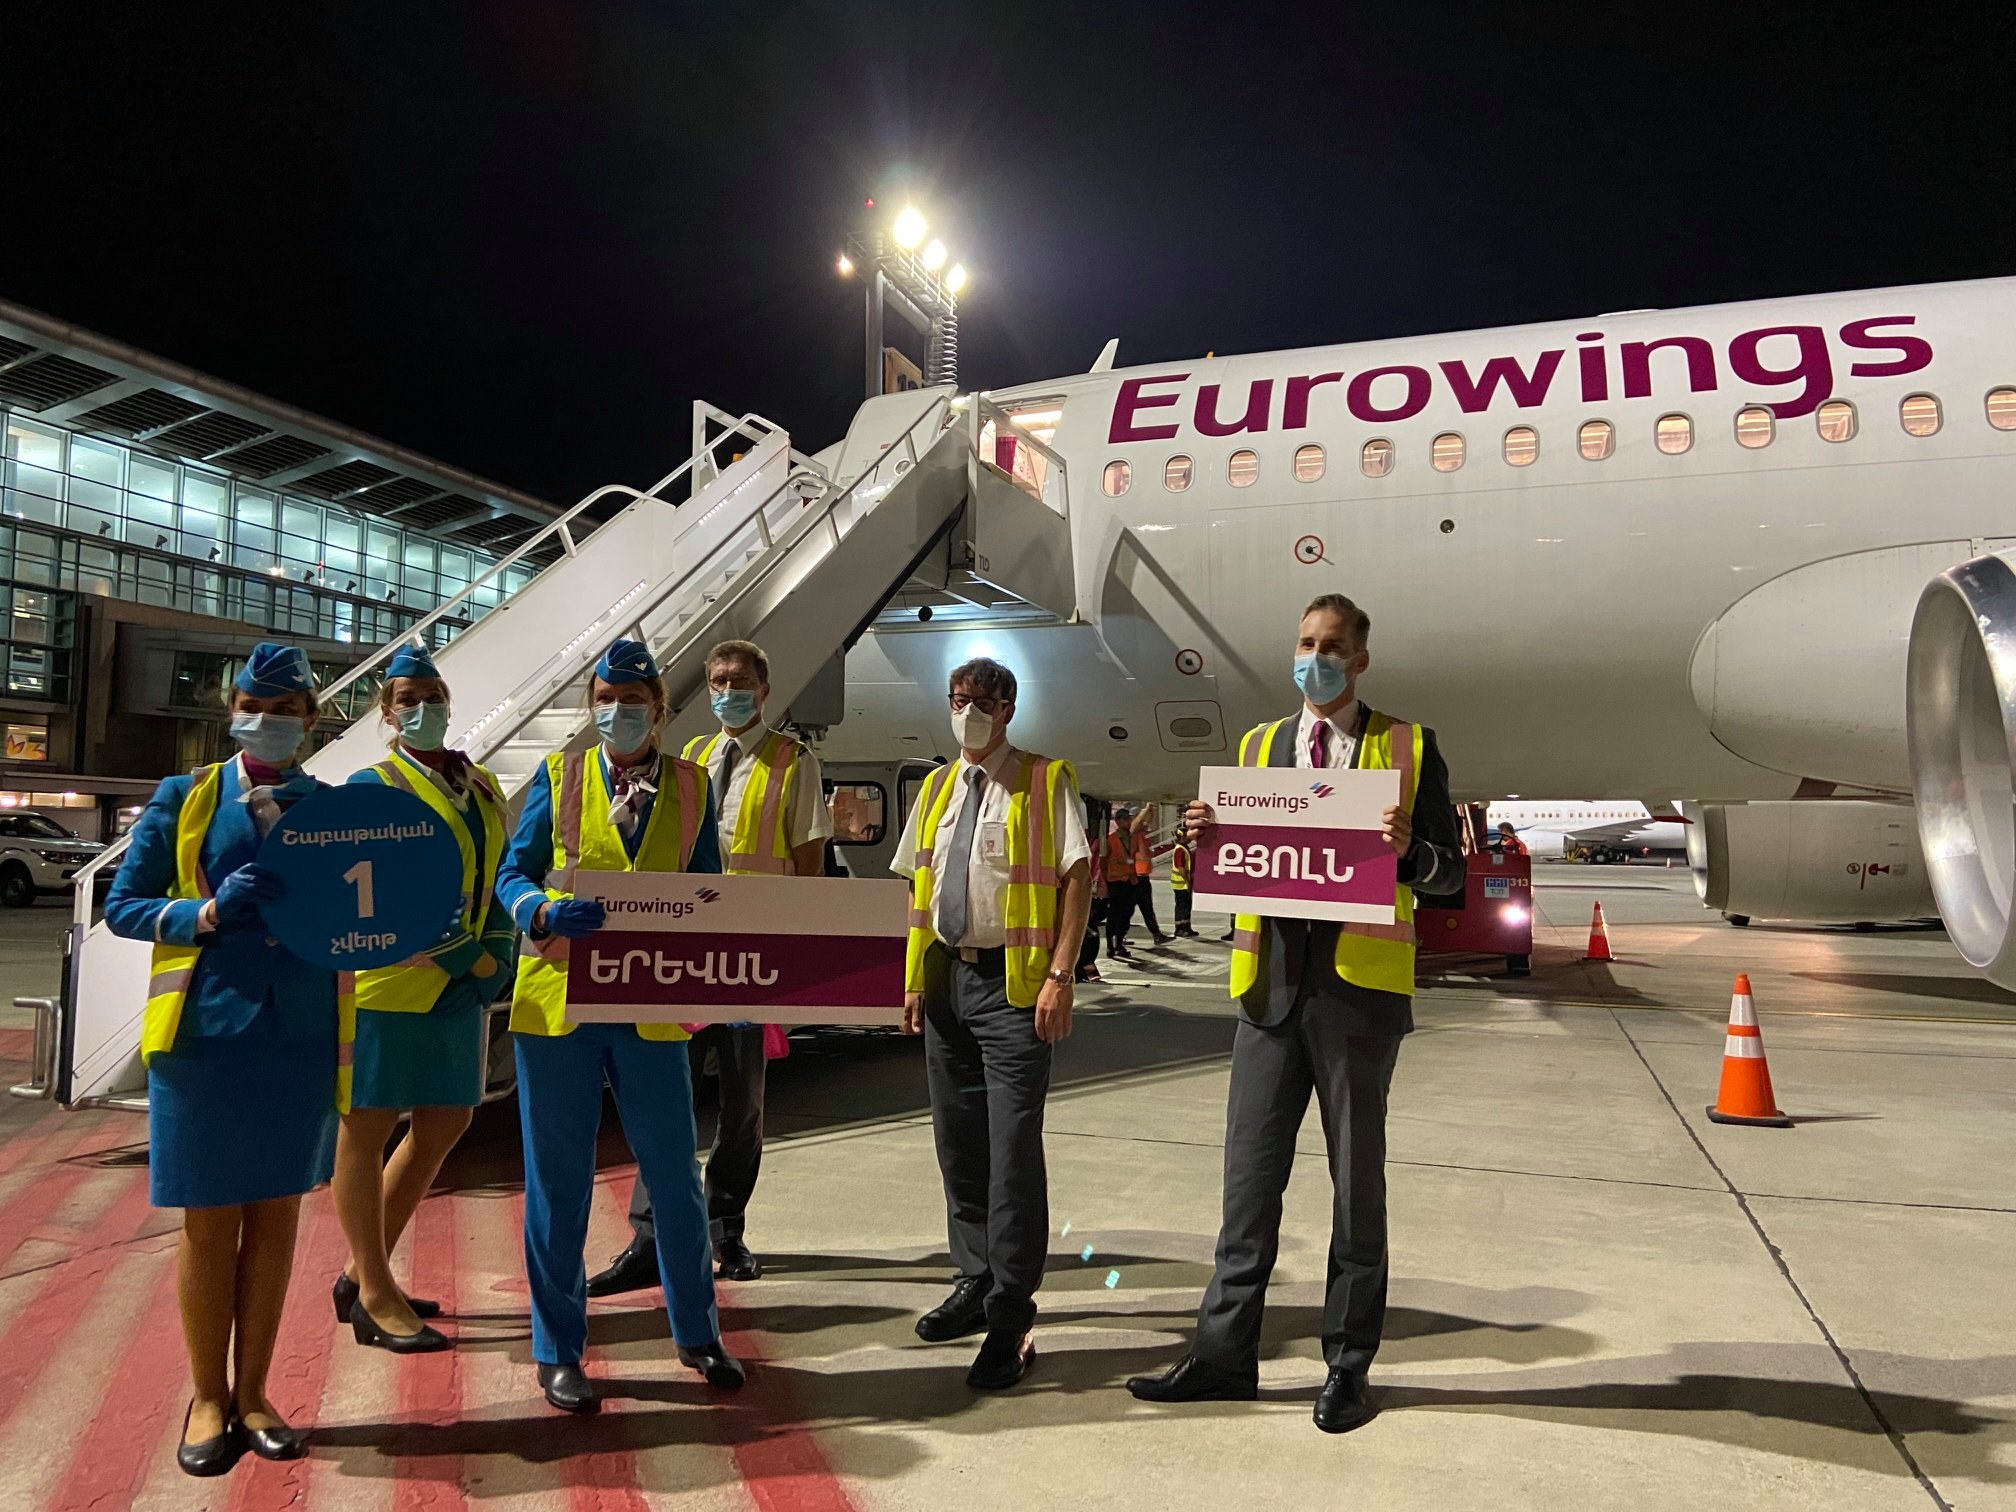 Eurowings-ն առաջին անգամ չվերթեր կիրականացնի դեպի Հայաստան